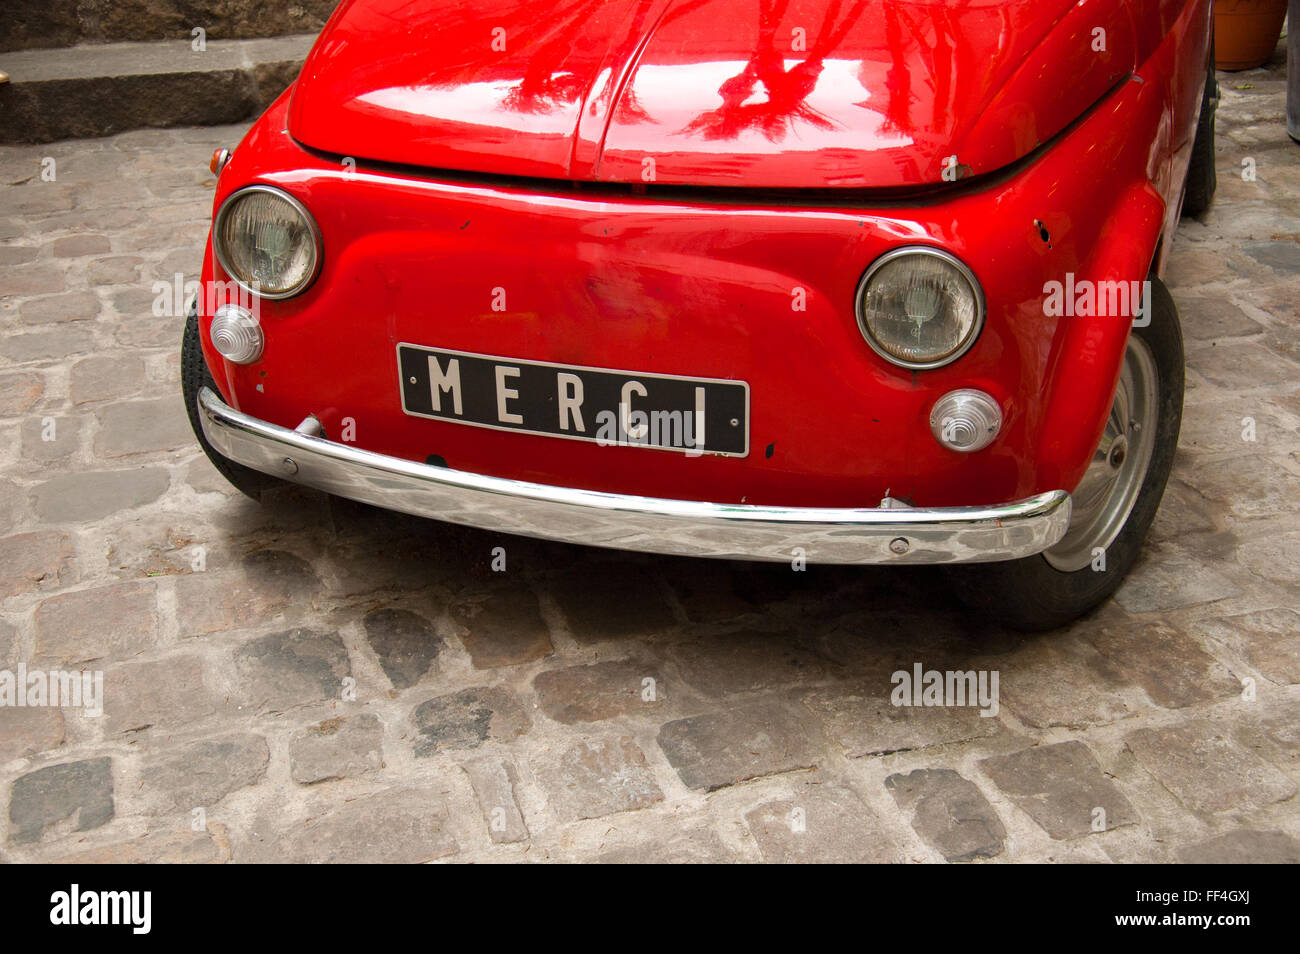 Alte vintage italienischen Autos in Rot mit merci auf die Platte geschrieben Stockfoto